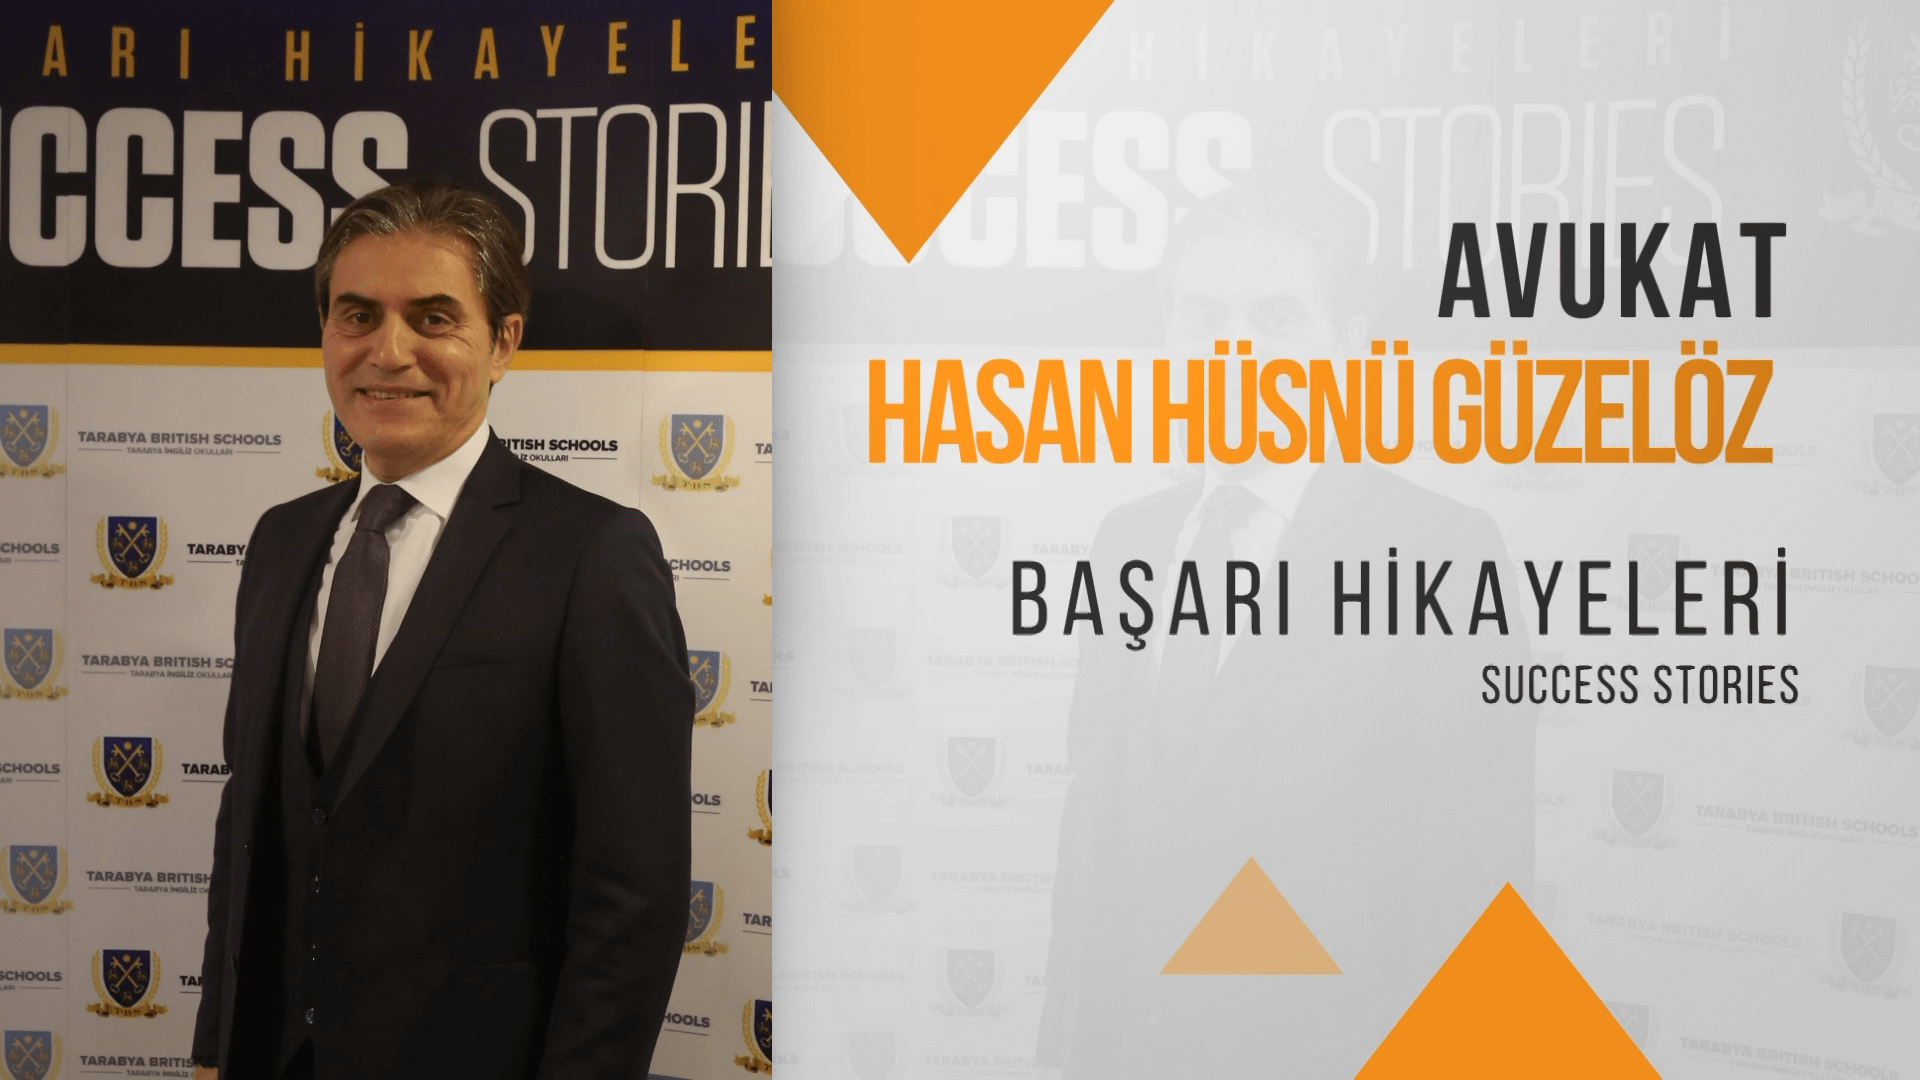 TBS Başarı Hikayeleri Av. Hasan Hüsnü Güzelöz